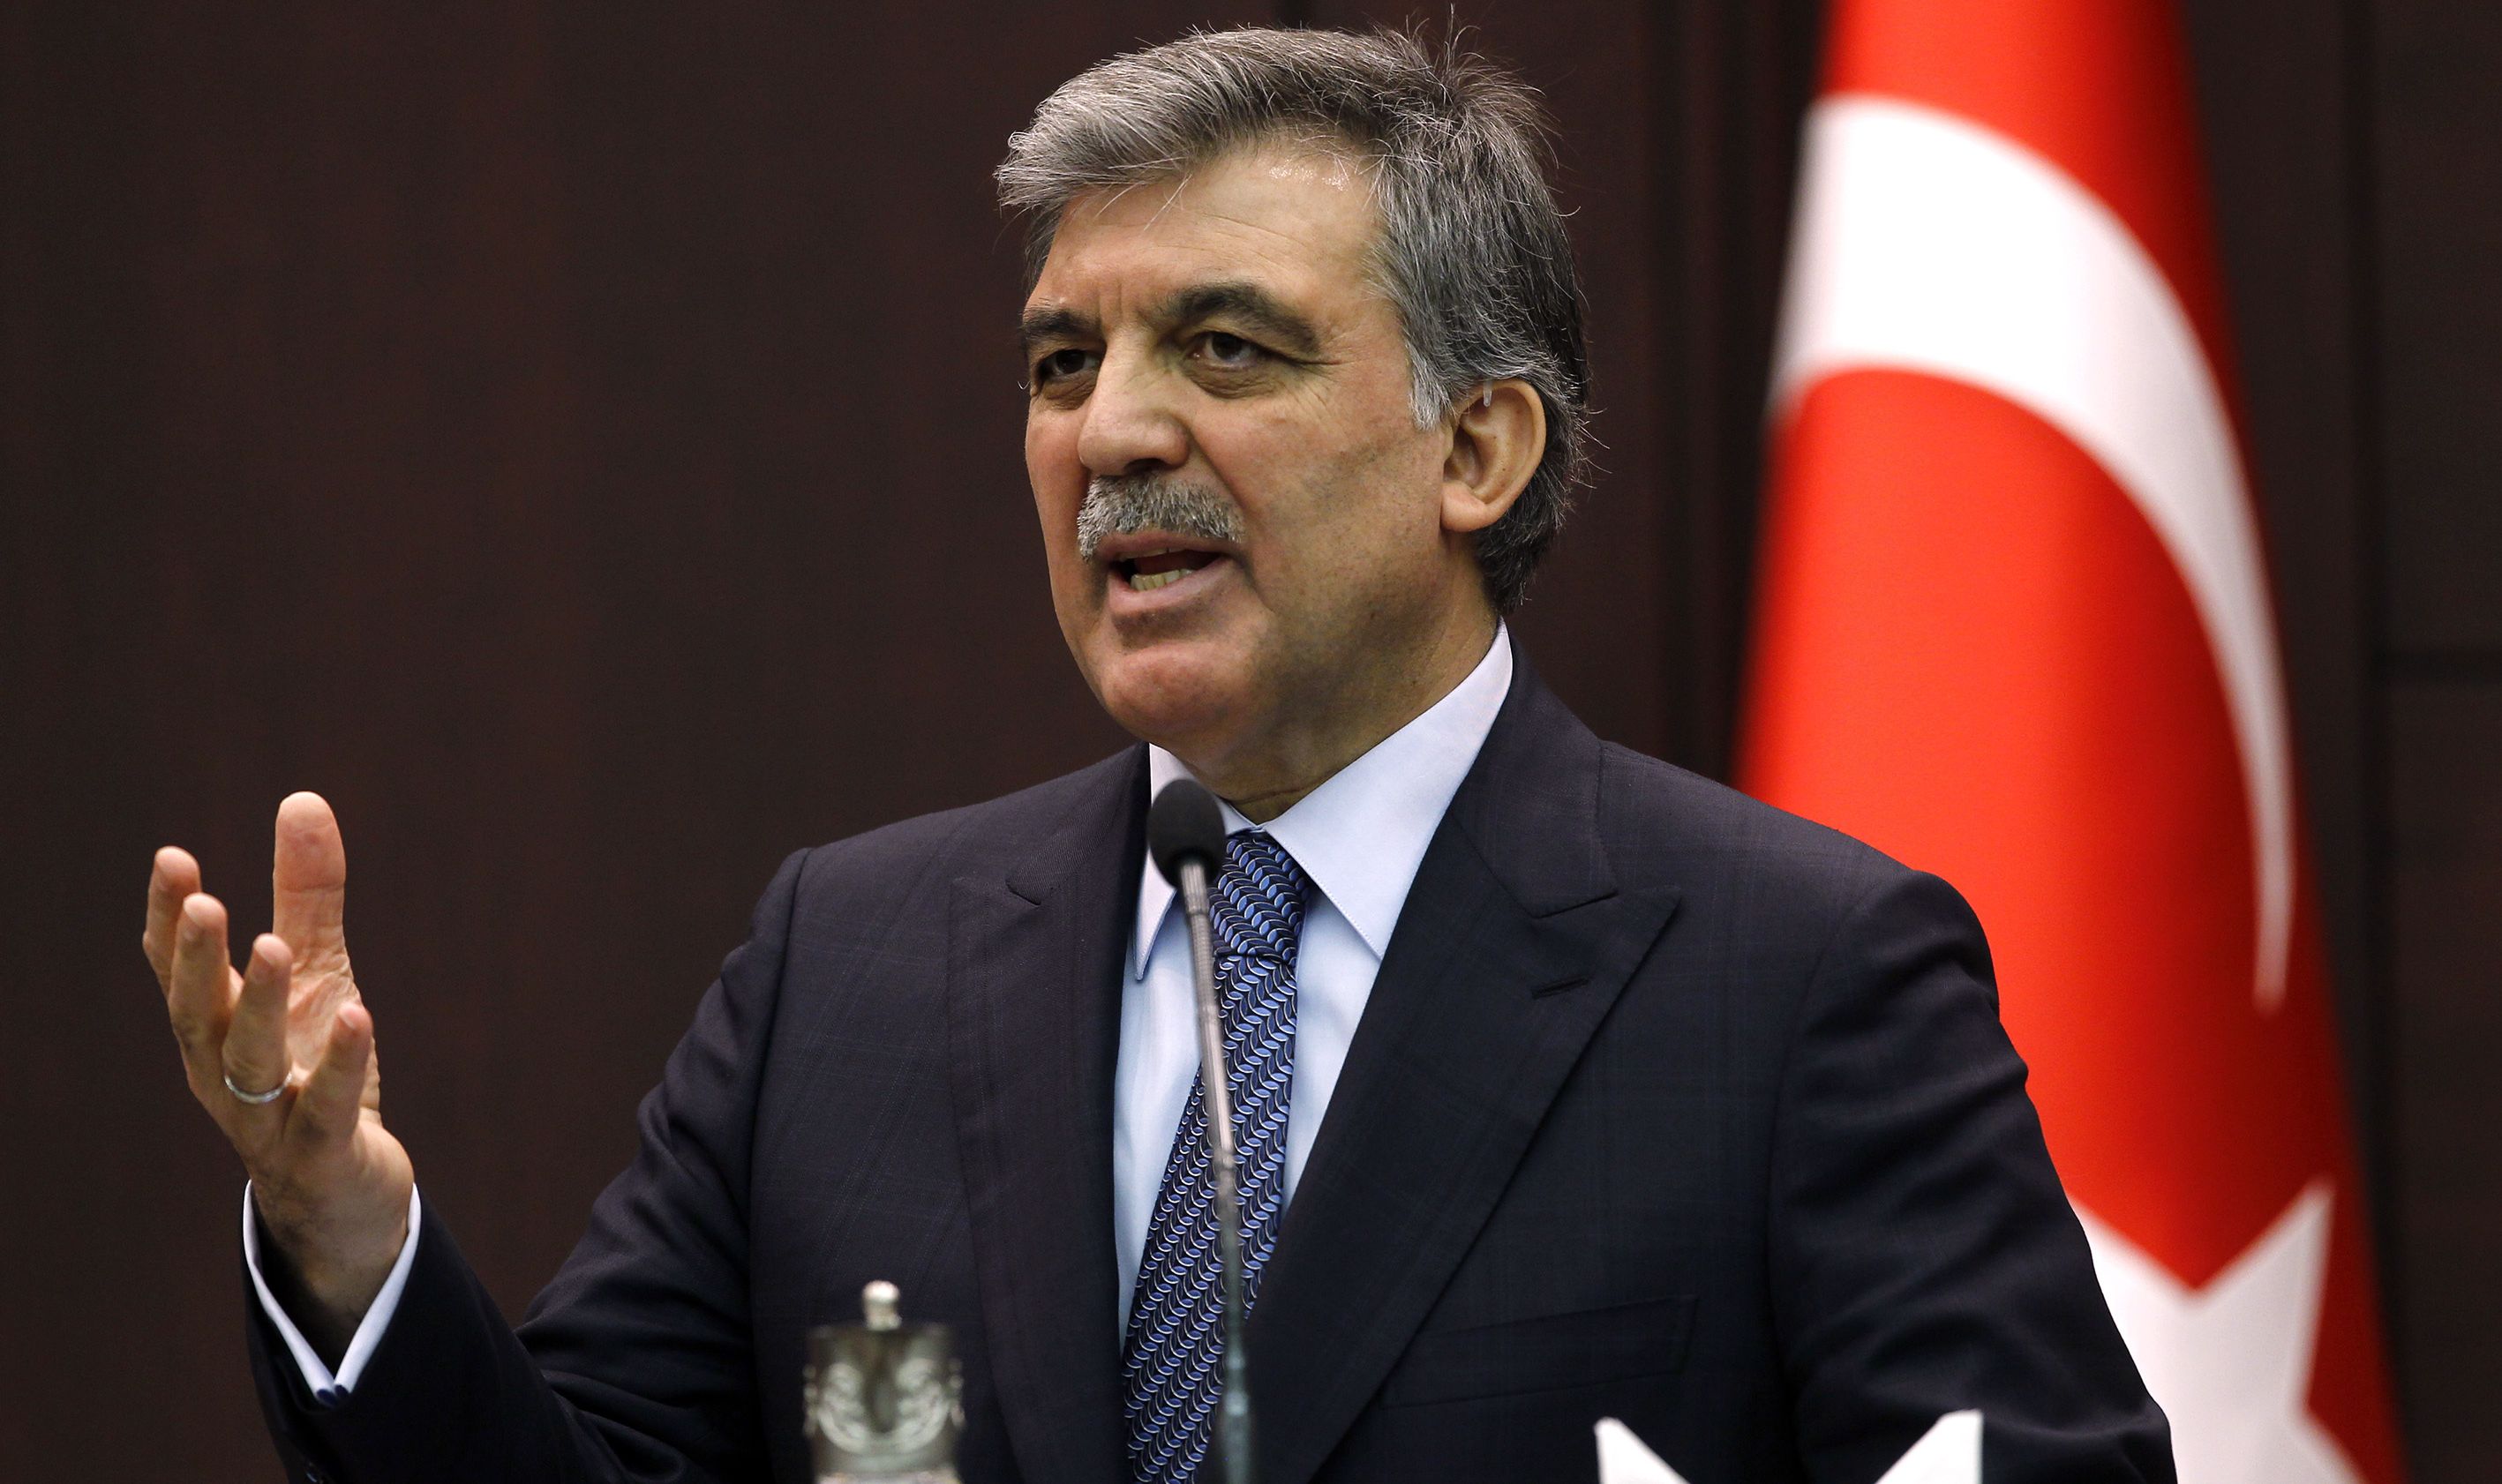 Abdullah Gül den Kemal Derviş açıklaması: Fedakarca çalıştı